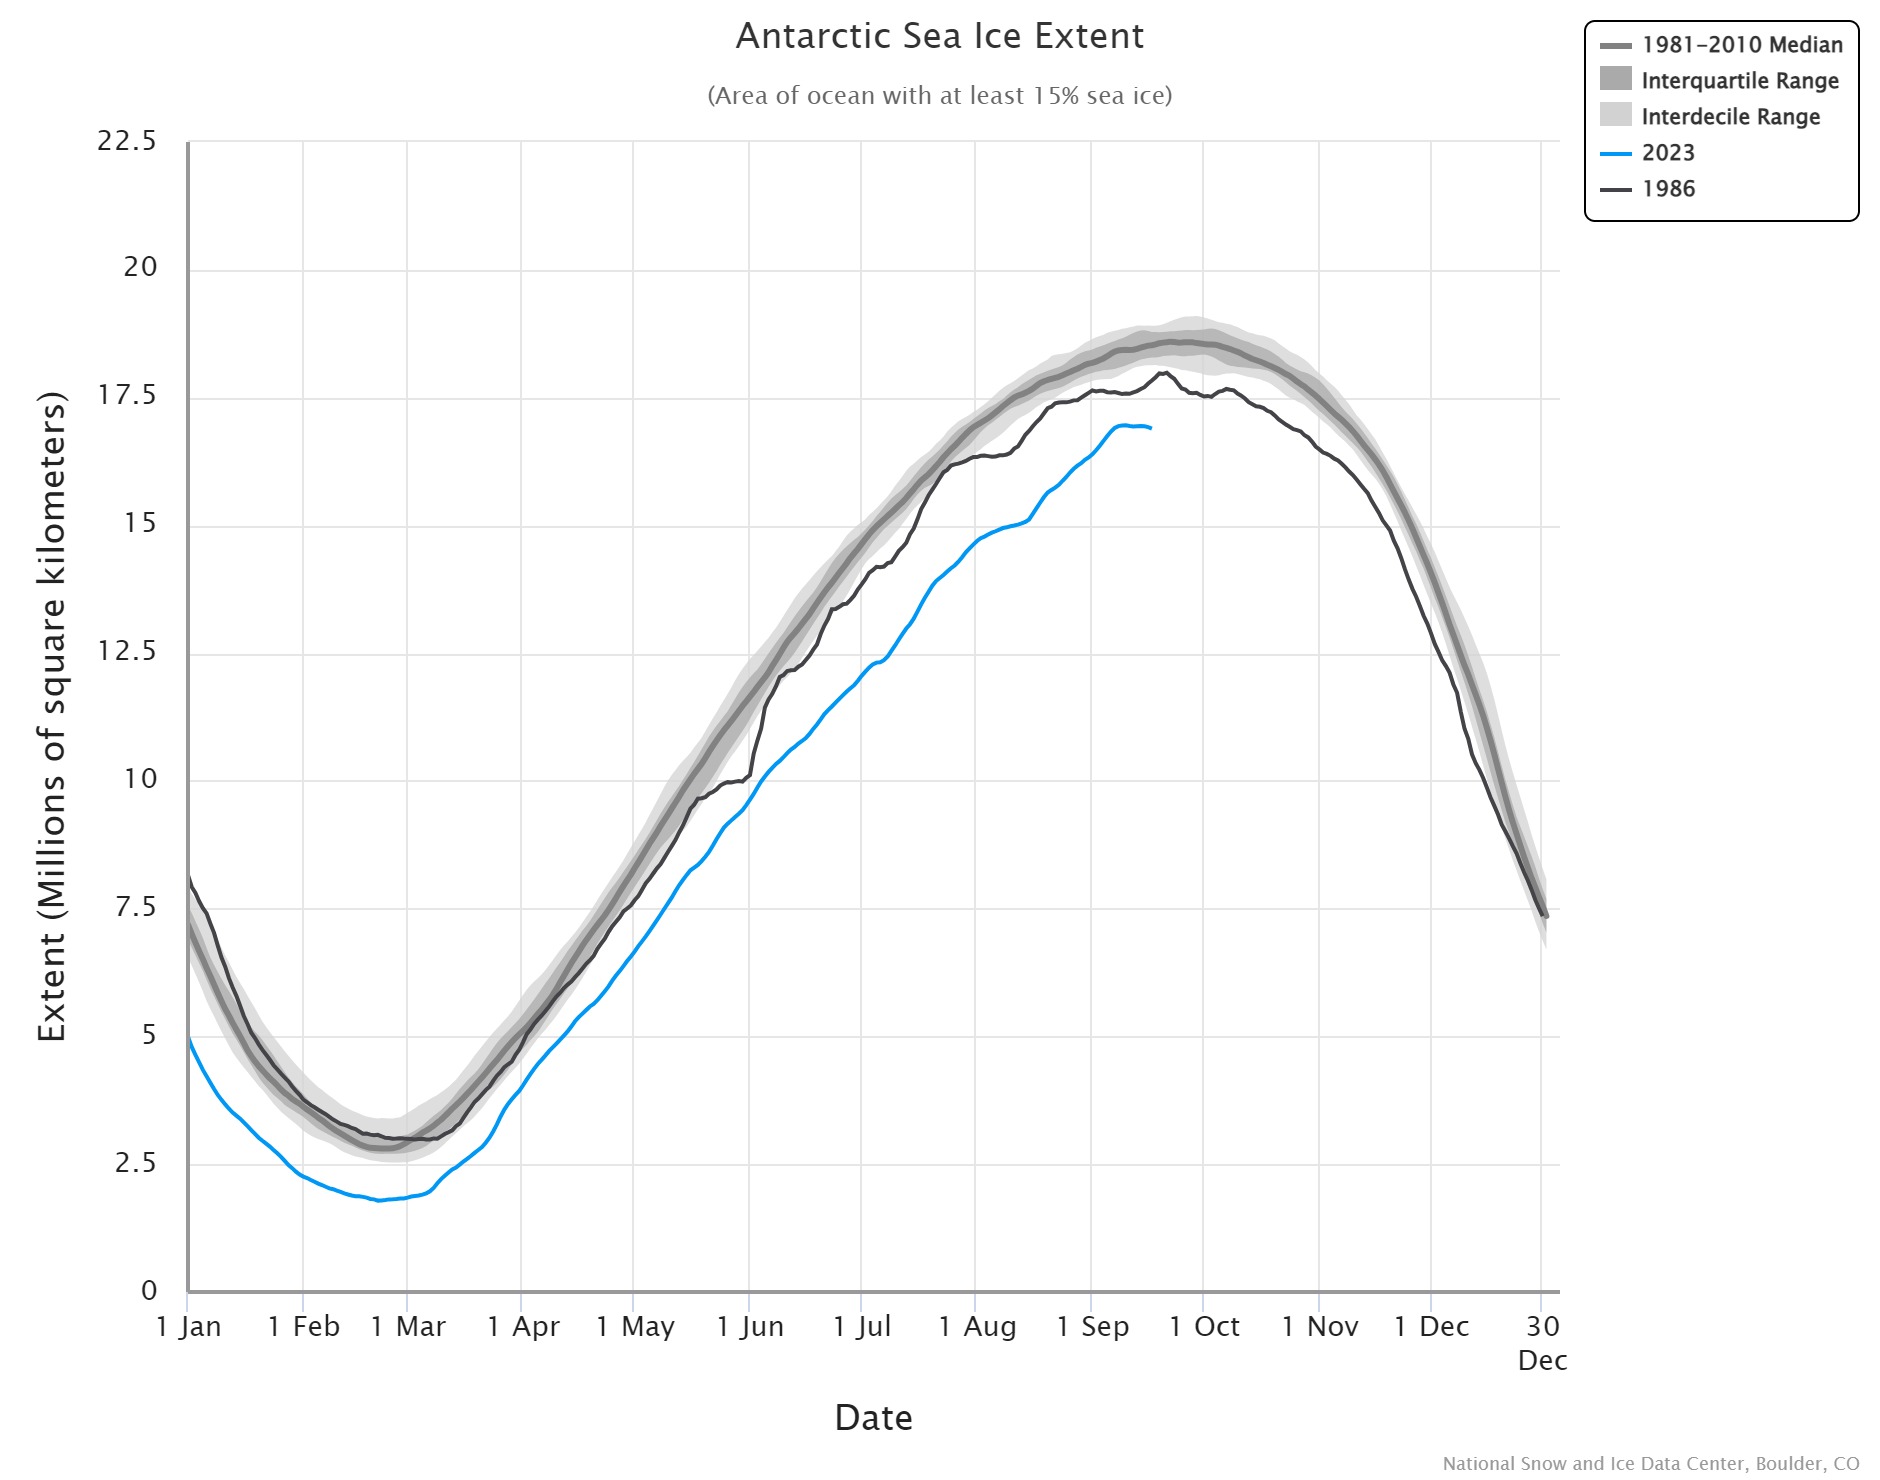 Antarctic sea ice record low